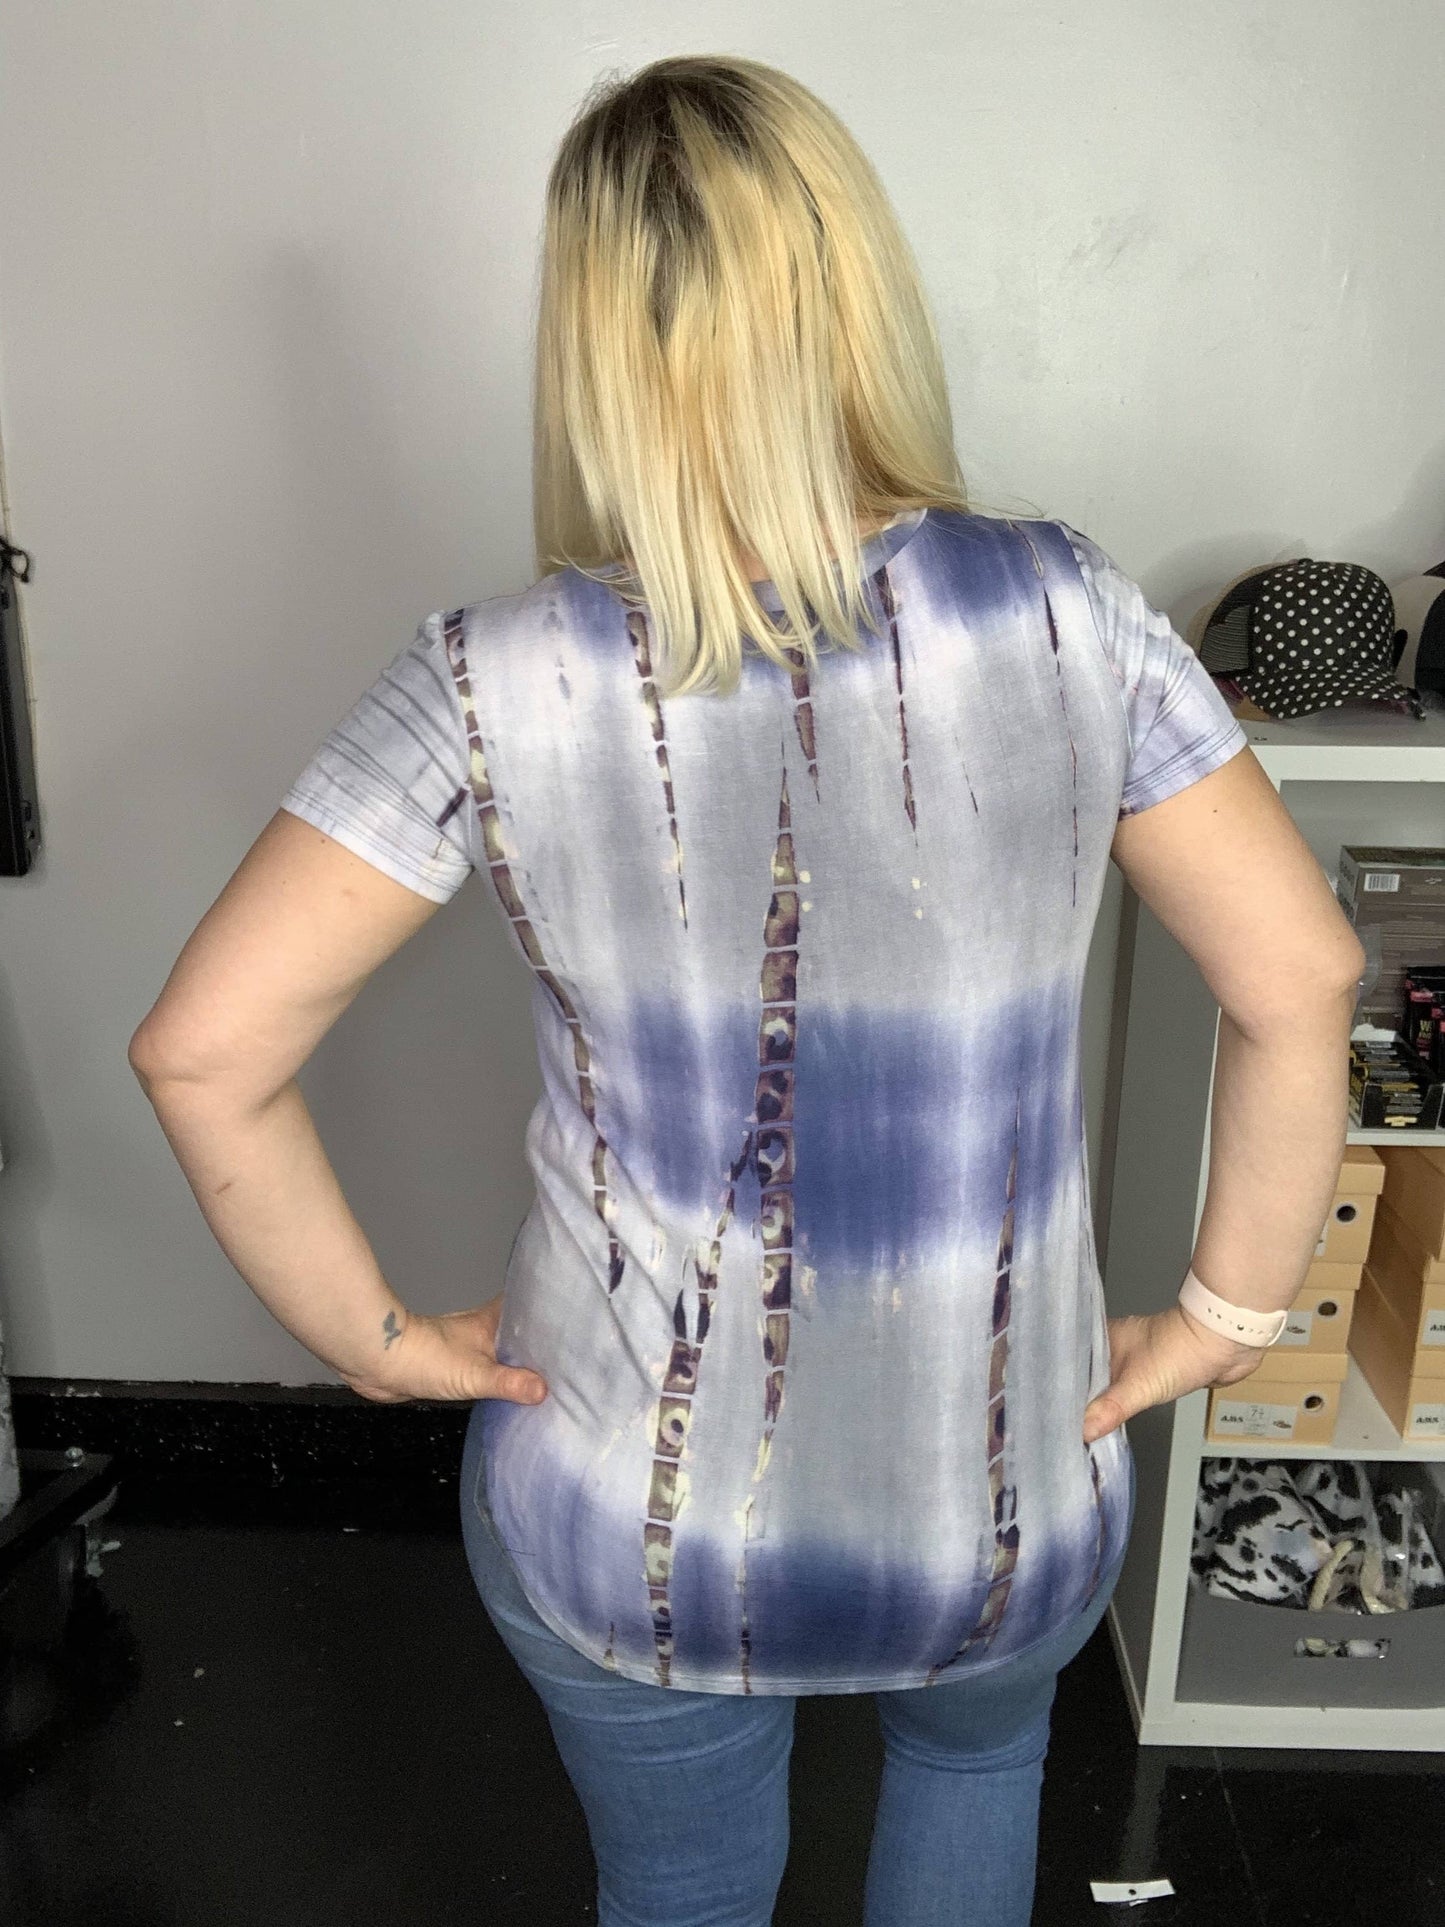 blue tie dye t-shirt on woman back view